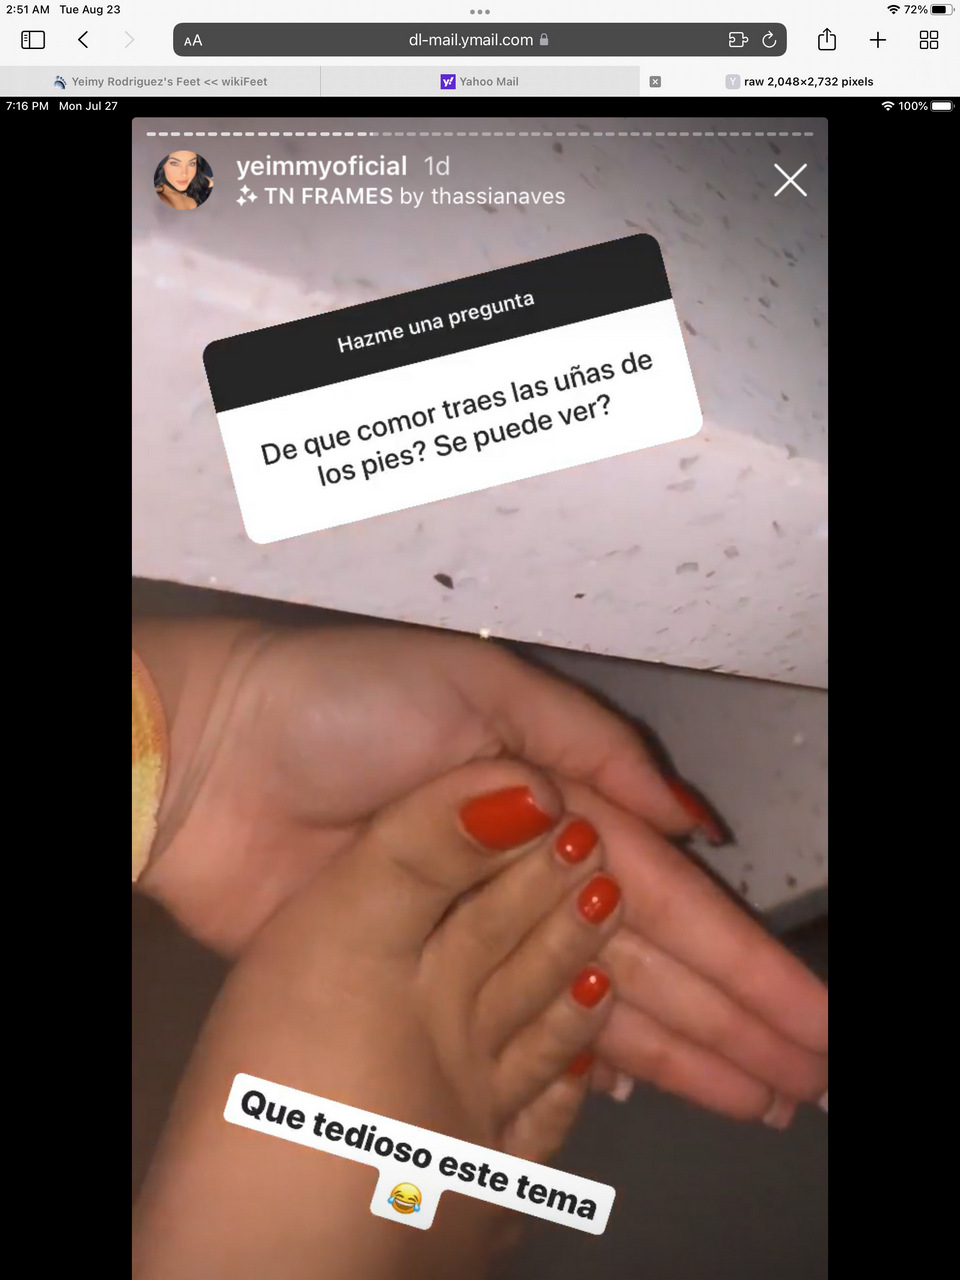 Yeimy Rodriguez Feet